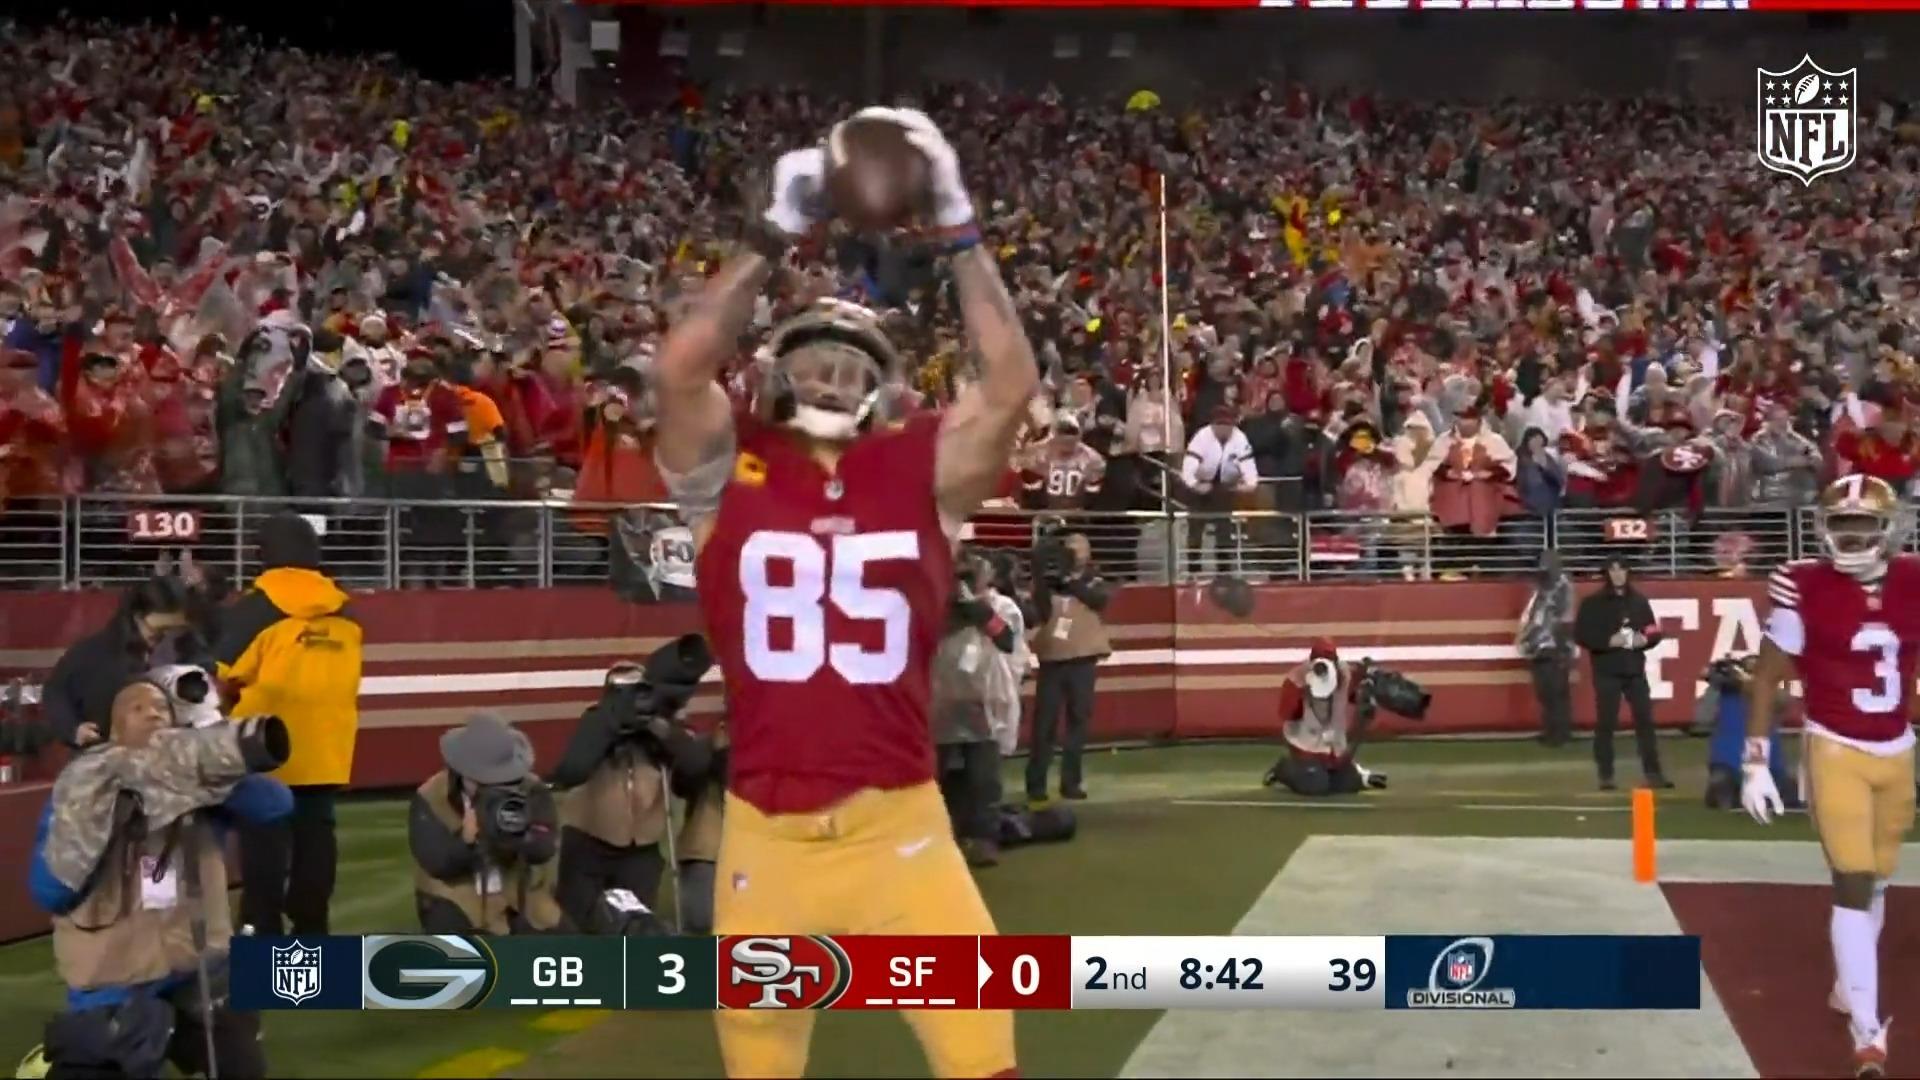 ¡Los 49ers derrotan a los Packers en emocionantes videos destacados de los playoffs!